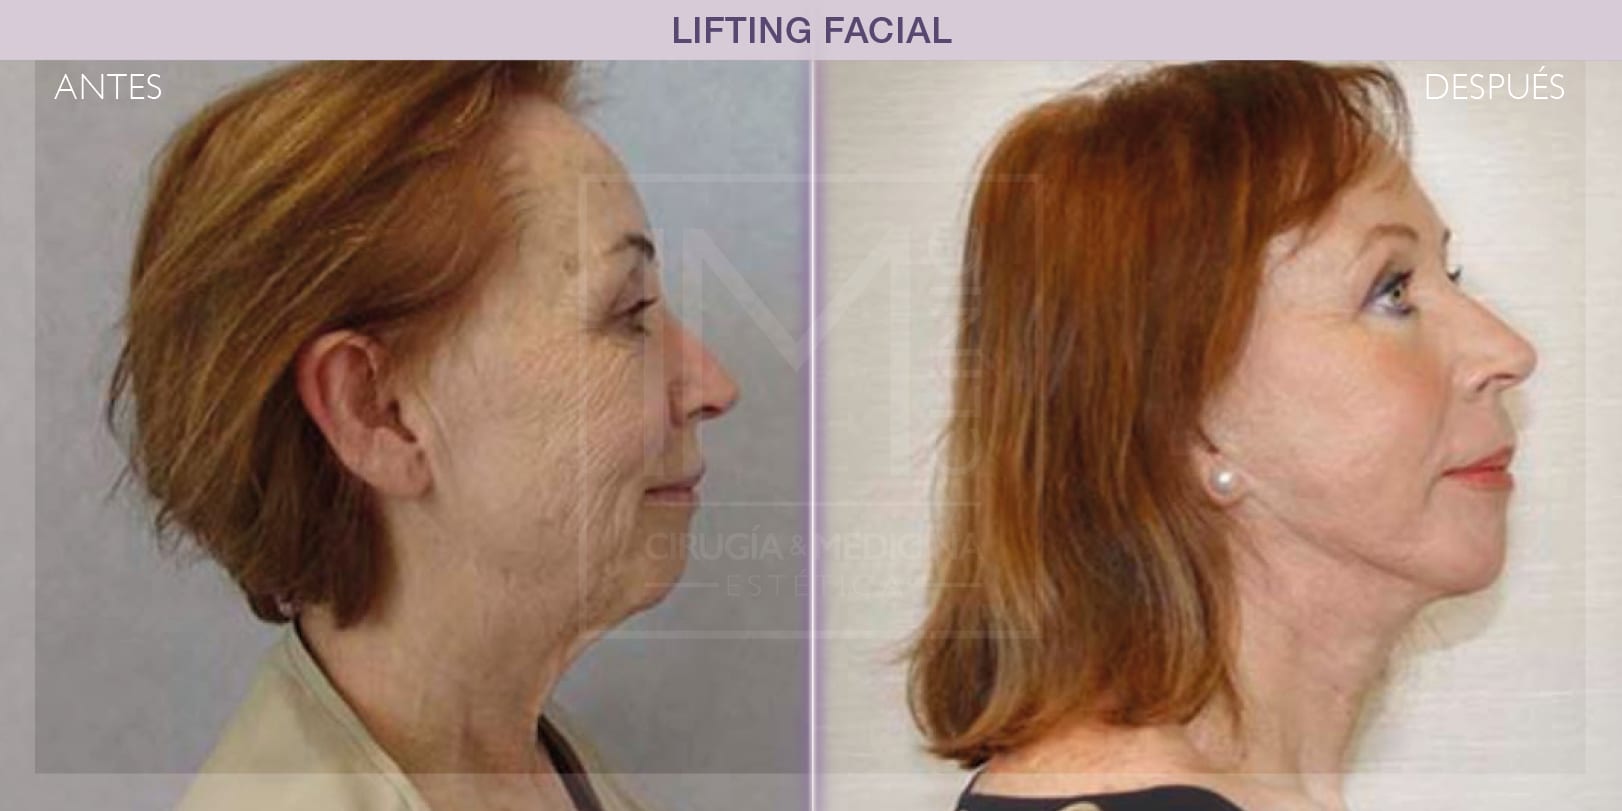 Rejuvenecimiento facial: comparativa antes y después del lifting